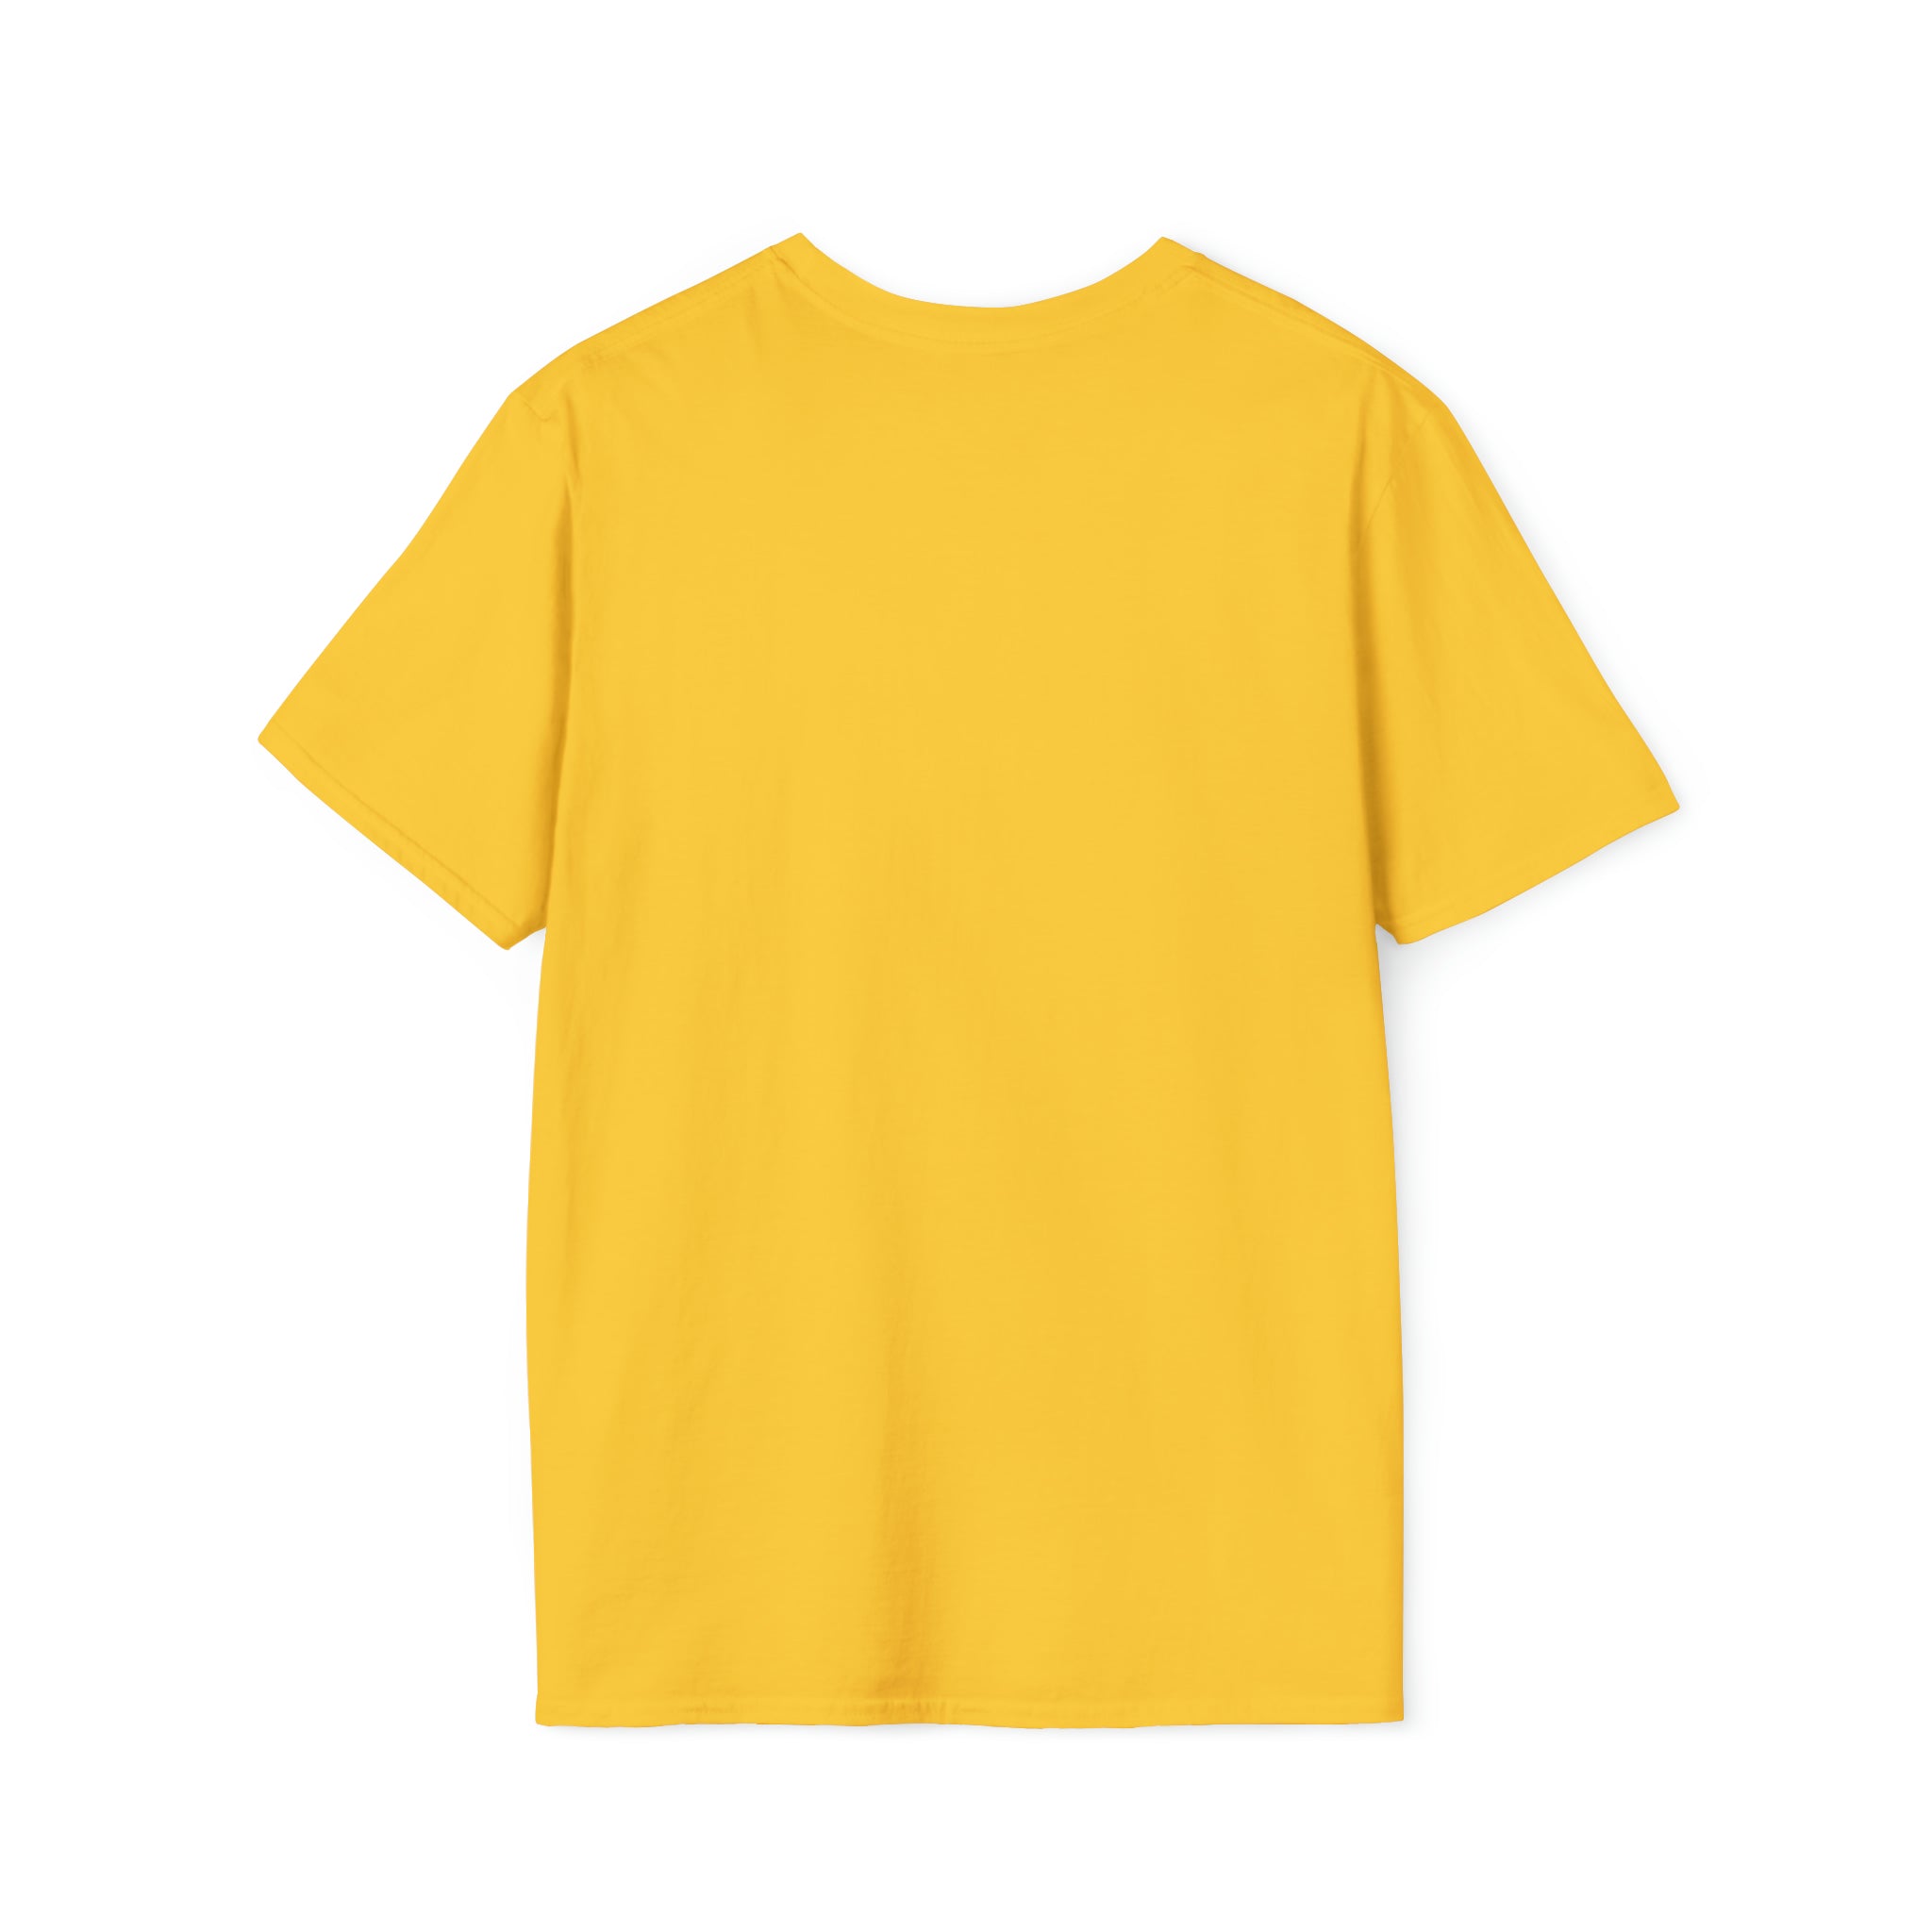 Soft-Style Unisex USYGO T-Shirt